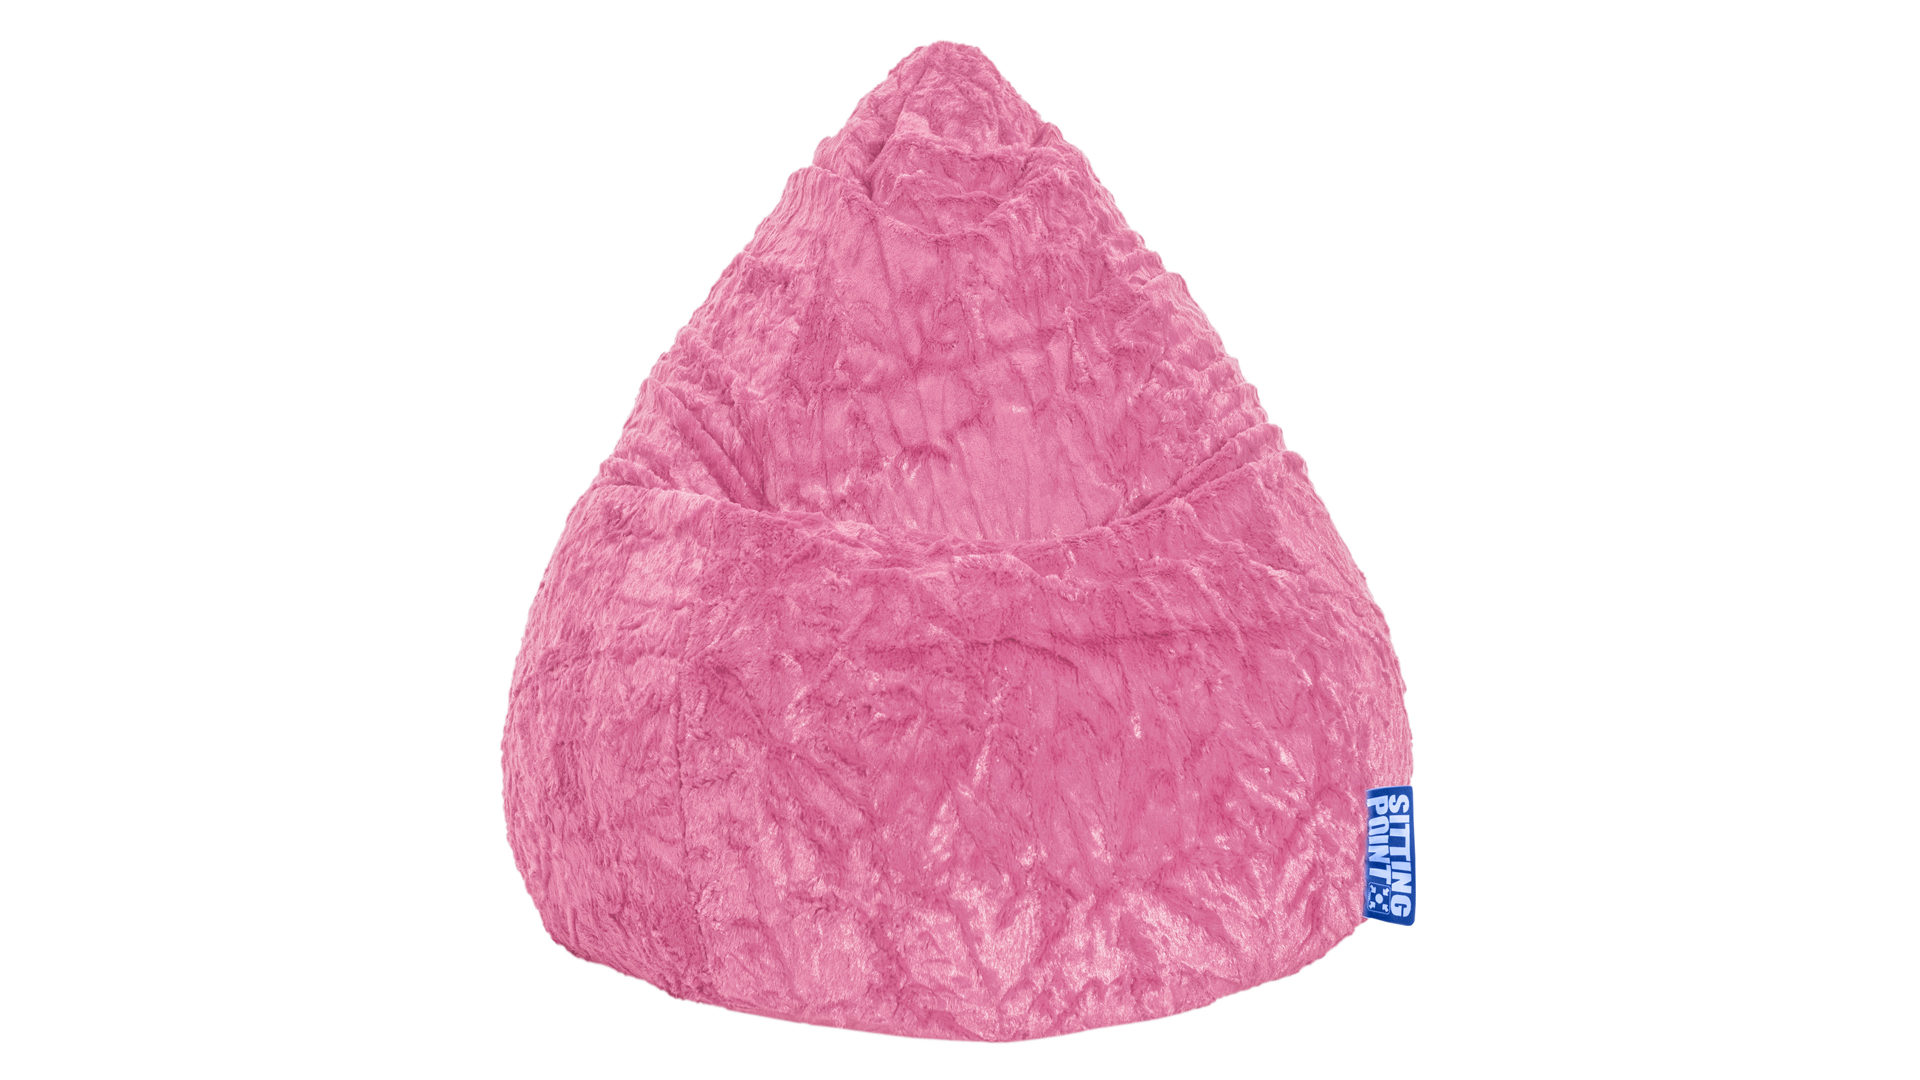 Sitzsack Magma sitting point aus Stoff in Pink SITTING POINT Plüsch-Sitzsack Fluffy L als Sitzmöbel pinker Plüschbezug - ca. 70 x 90 cm